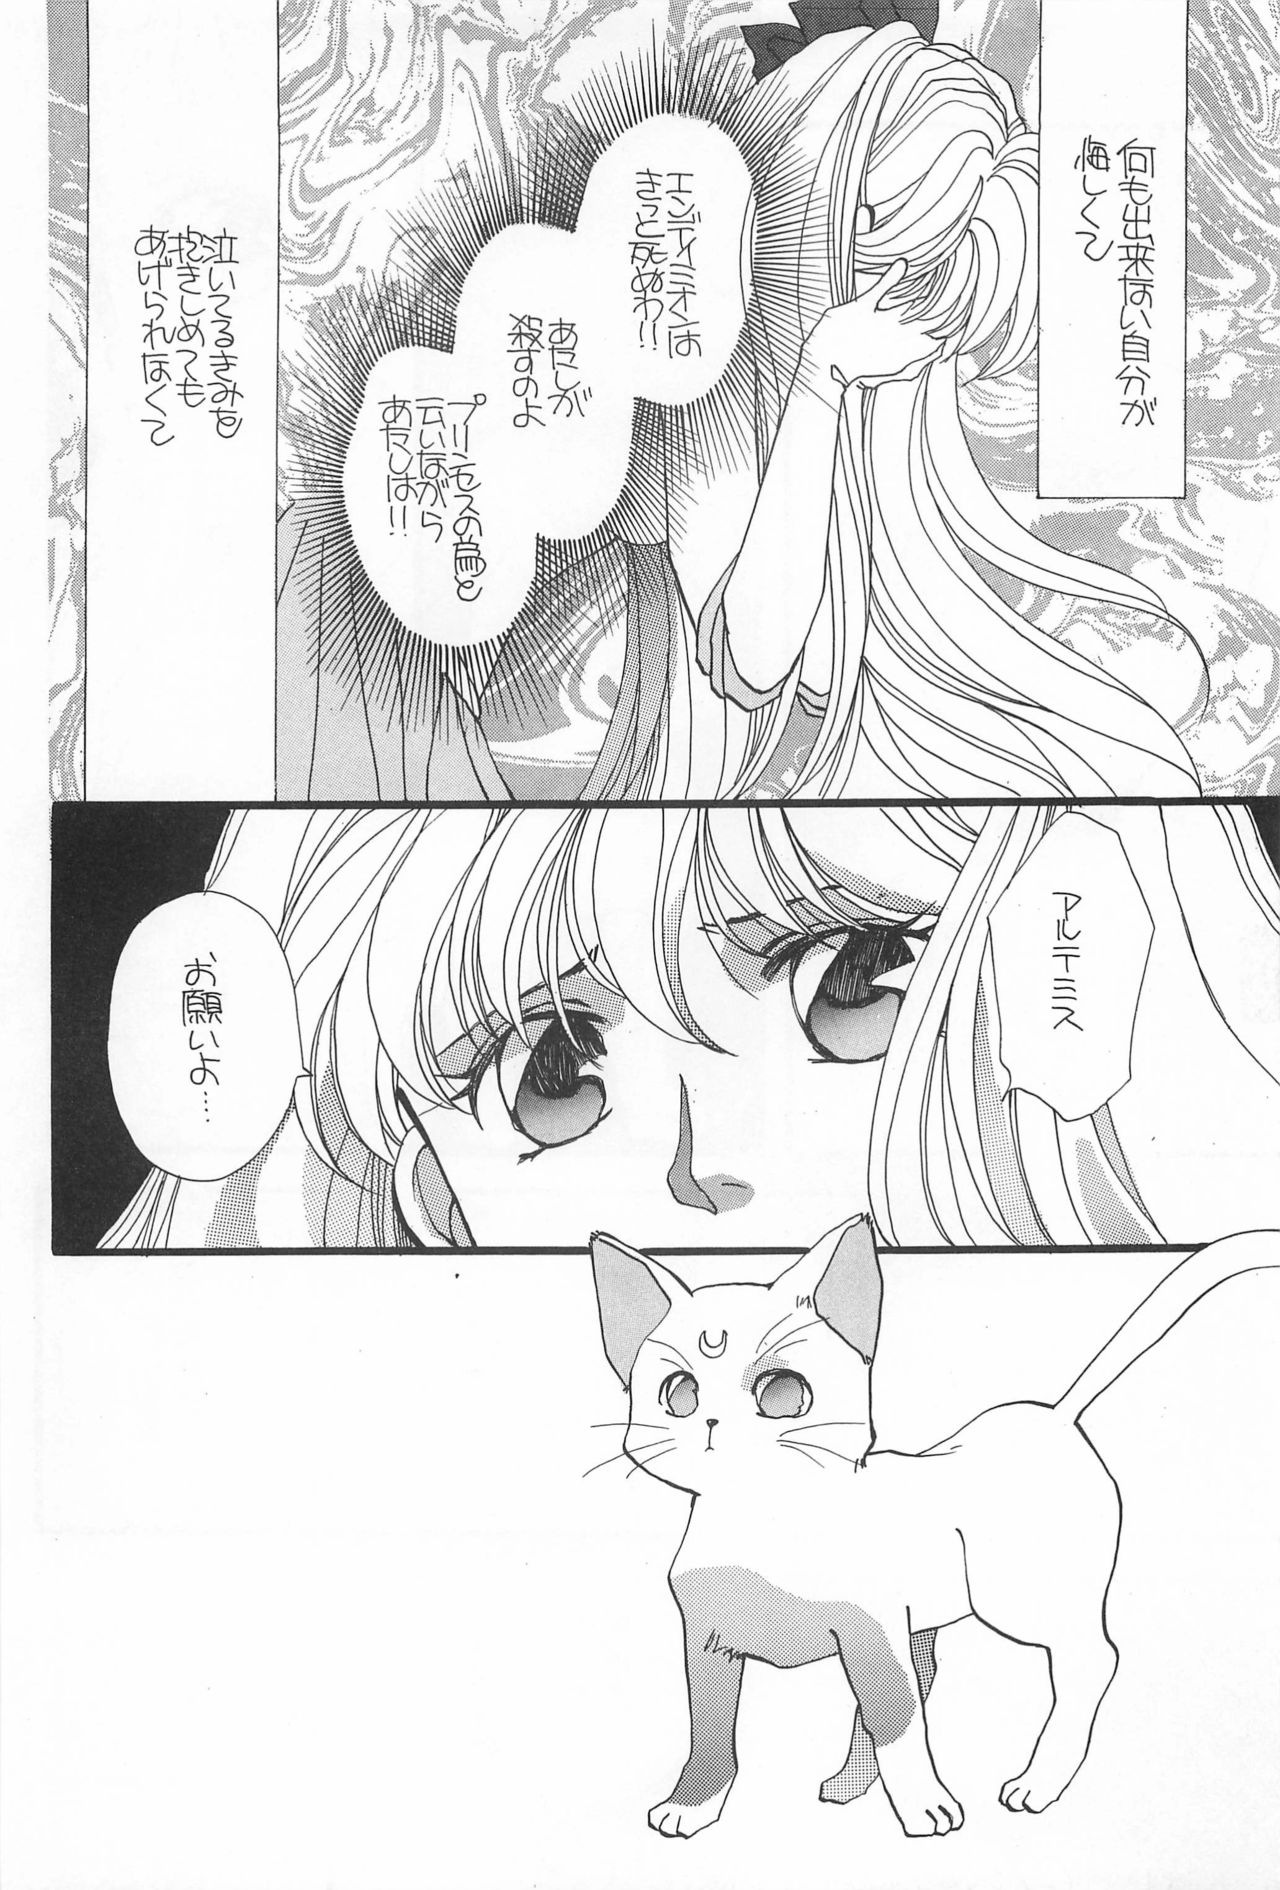 [Hello World (Muttri Moony)] Kaze no You ni Yume no You ni - Sailor Moon Collection (Sailor Moon) 83